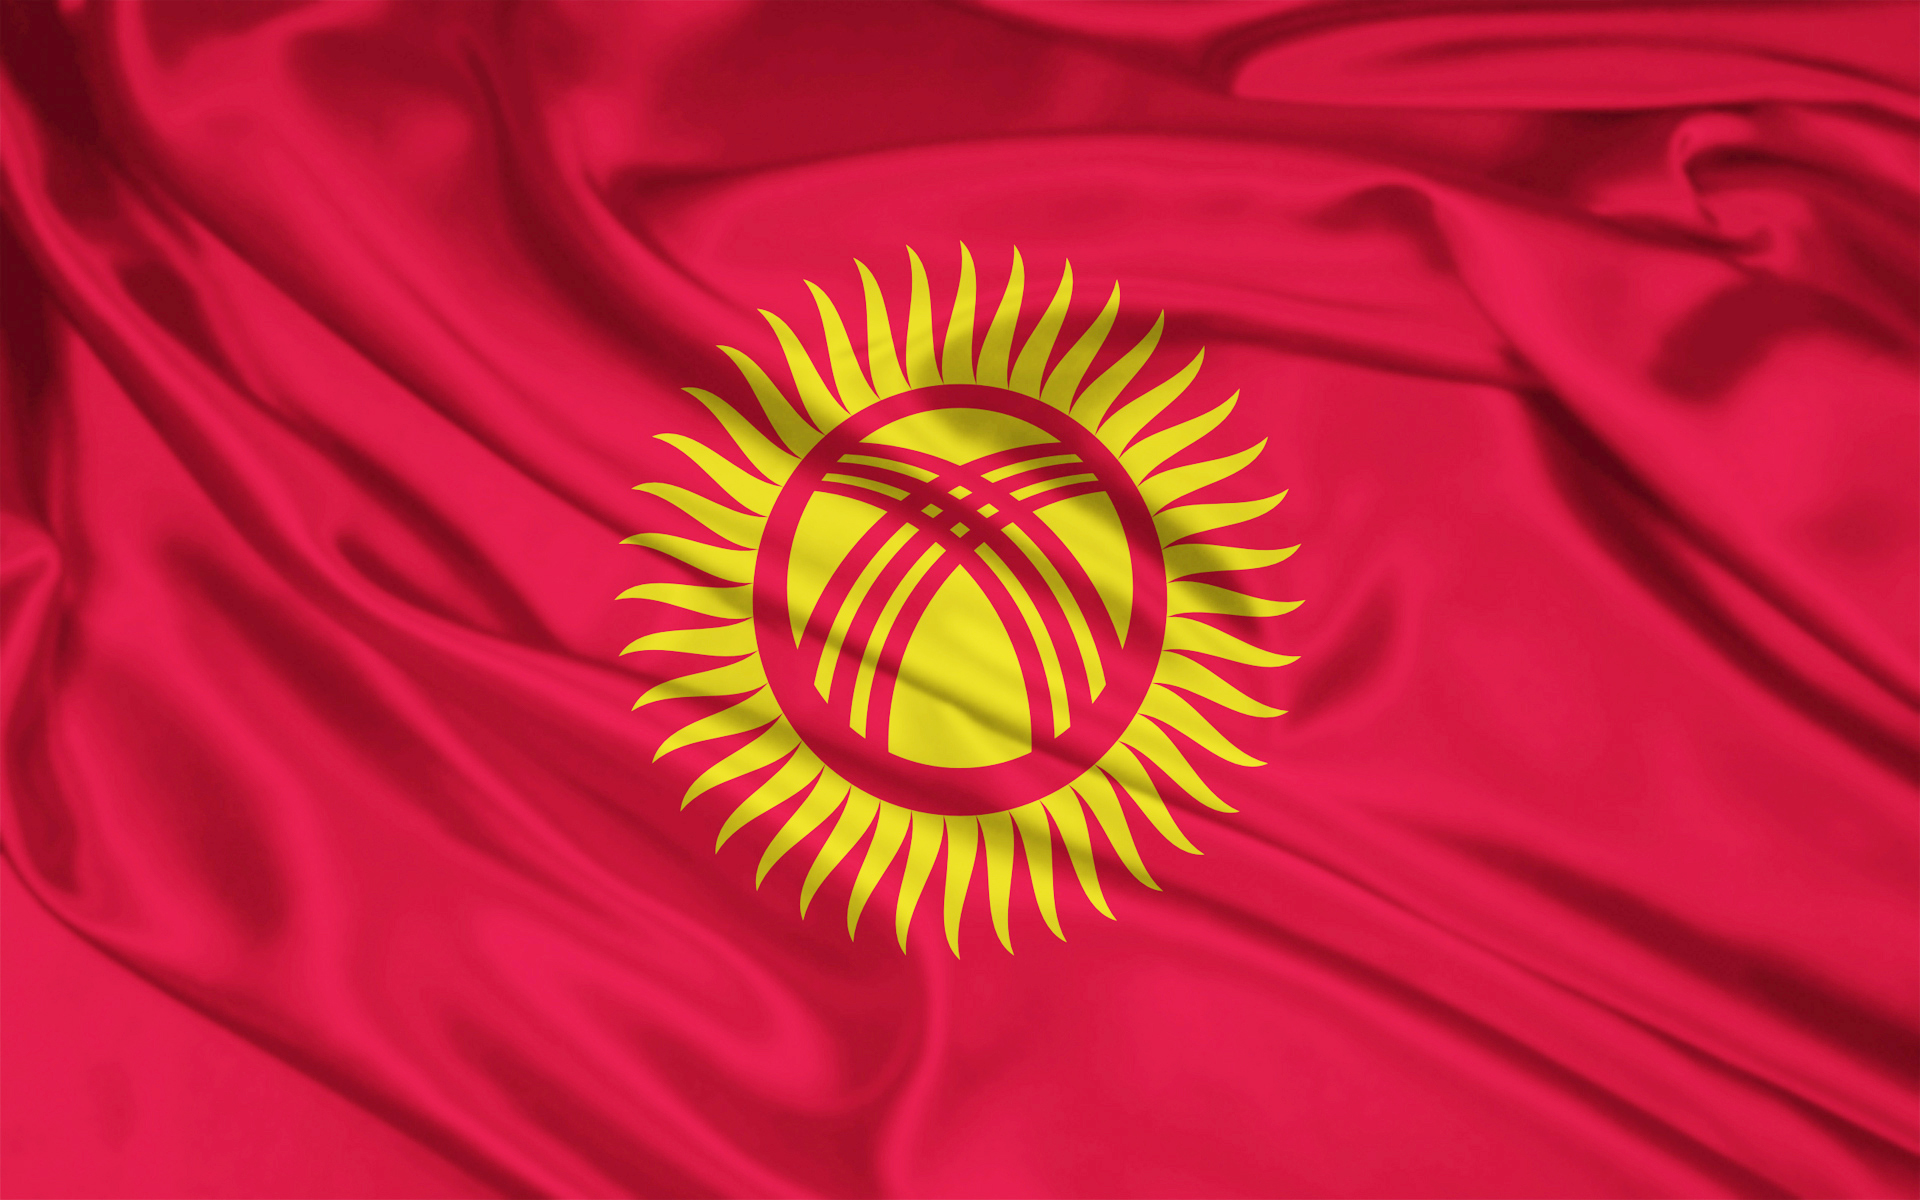 Республика Кыргызстан планирует повысить налоги на добычу руды на территории страны. Подробности, ставки, сроки, комментарии специалистов.